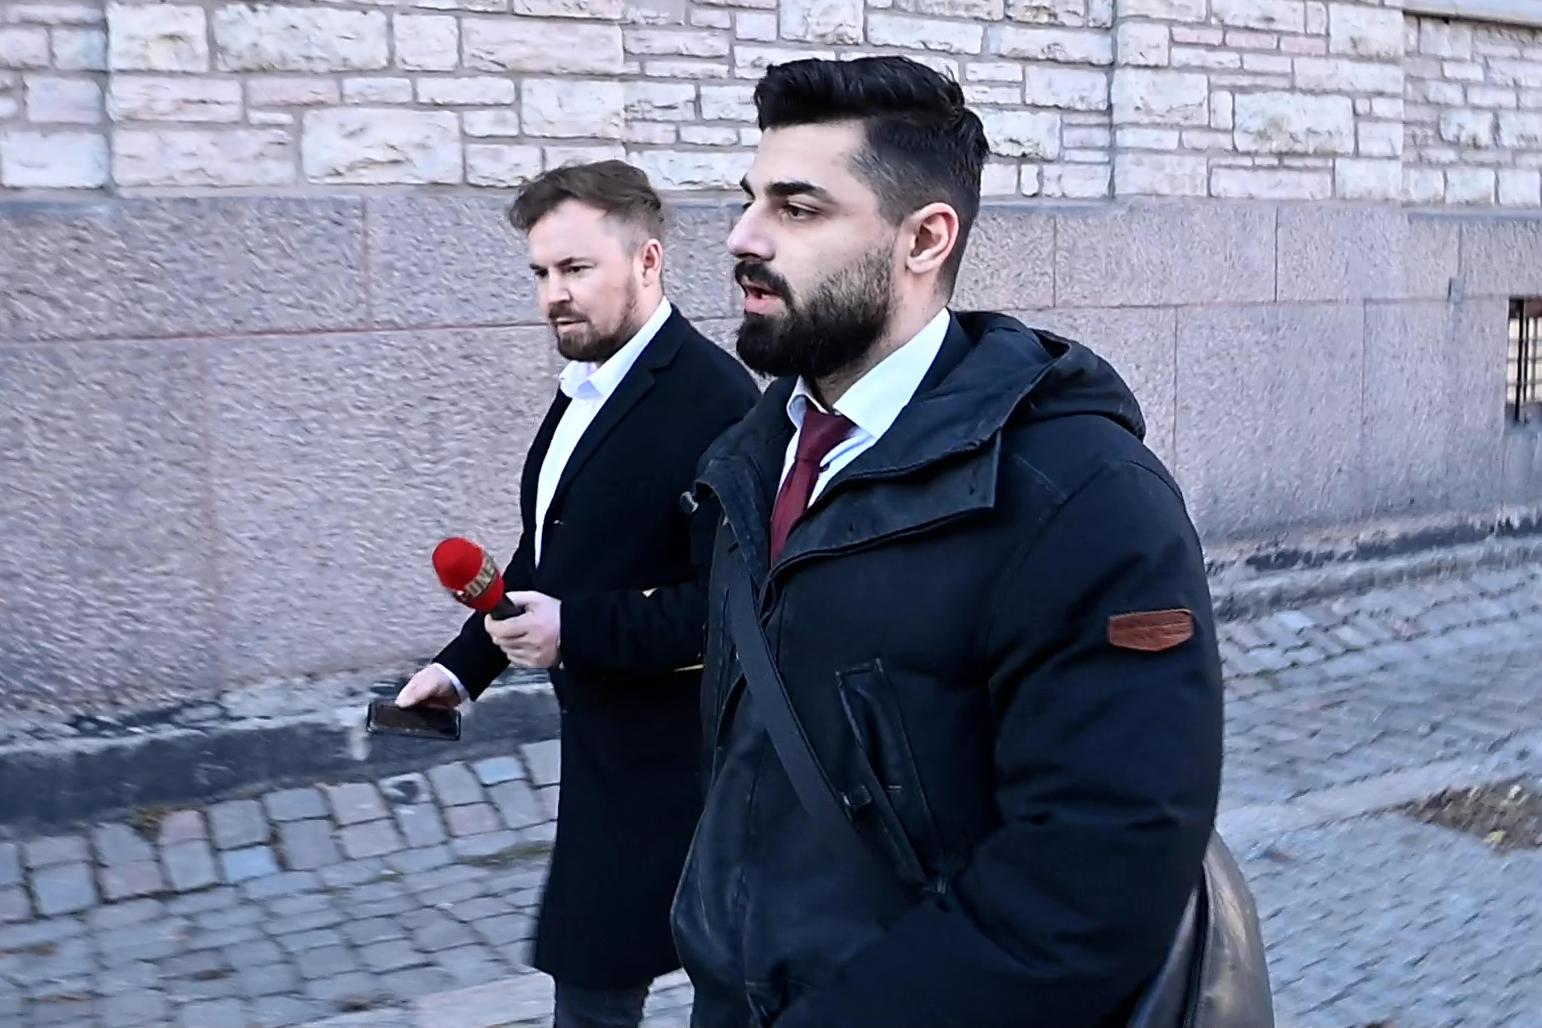 Försvarsadvokaten Neo Barstedt drog in närmare tio miljoner kronor förra året. Nu kan Aftonbladet avslöja hur han lurar domstolarna genom att lämna osanna uppgifter.